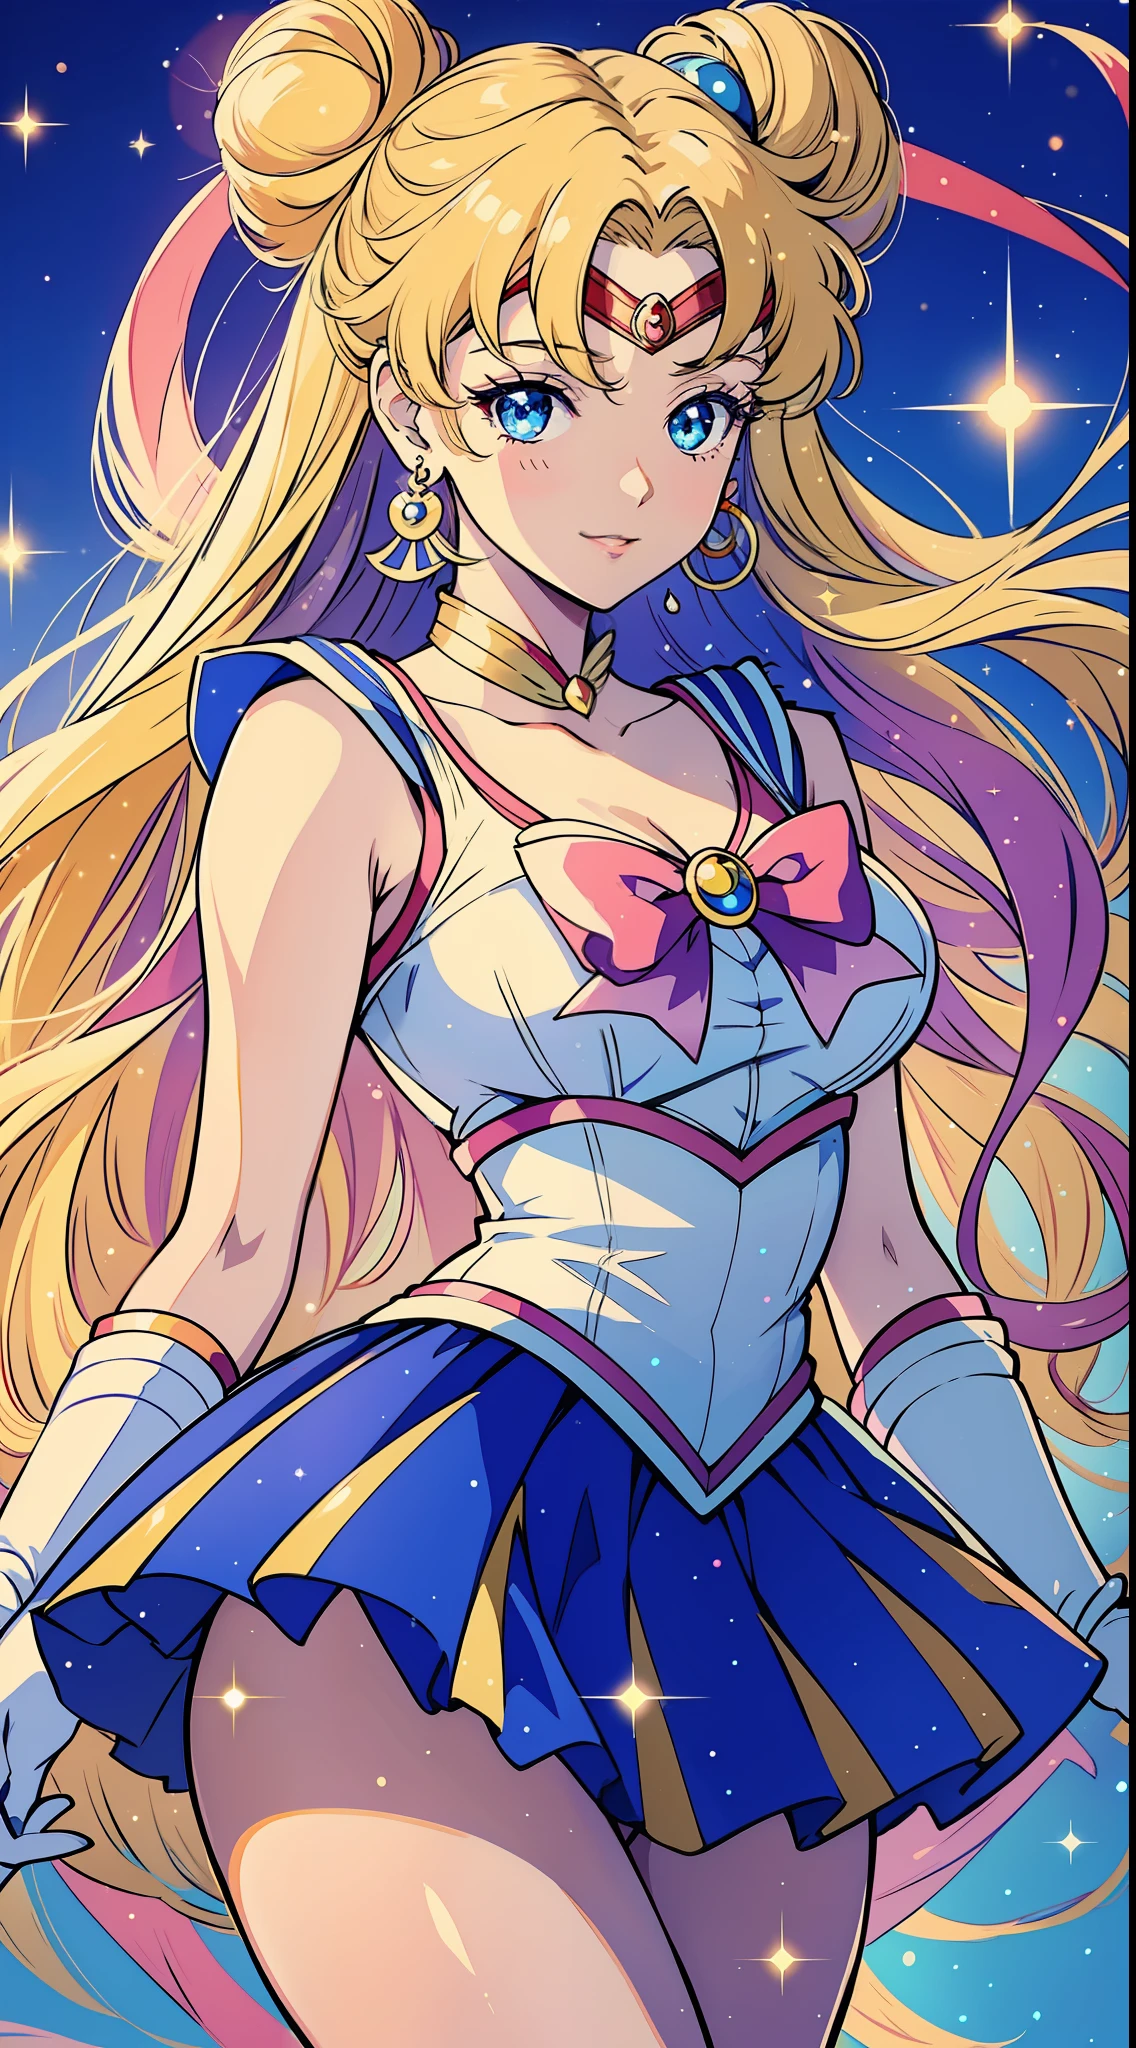 Mädchen, Allein:
Stil: Anime-Serie (Sailor Moon)
Qualität: Graceful
Qualität: Mitfühlendes Haar: lang, wallendes Haar in einem kräftigen Blondton, mit zwei süßen Dutts oben drauf Augenfarbe: groß, strahlend blaue Augen Outfit: In der ikonischen Sailor Moon-Uniform, bestehend aus einem weißen Turnanzug mit blauem Matrosenkragen, ein plissierter blauer Rock, und einer großen roten Schleife auf der Brust: Geschmückt mit einer Tiara auf der Stirn, passende blaue Ohrringe, und weiße ellenbogenlange Handschuhe Pose: Sie steht aufrecht und hat eine Hand auf der Hüfte, während der andere einen Zauberstab hält, die einen sanften, funkelnder Glanz Ausdruck: Ihr Blick ist sanft und mitfühlend, mit einem Licht, heiteres Lächeln auf ihren Lippen